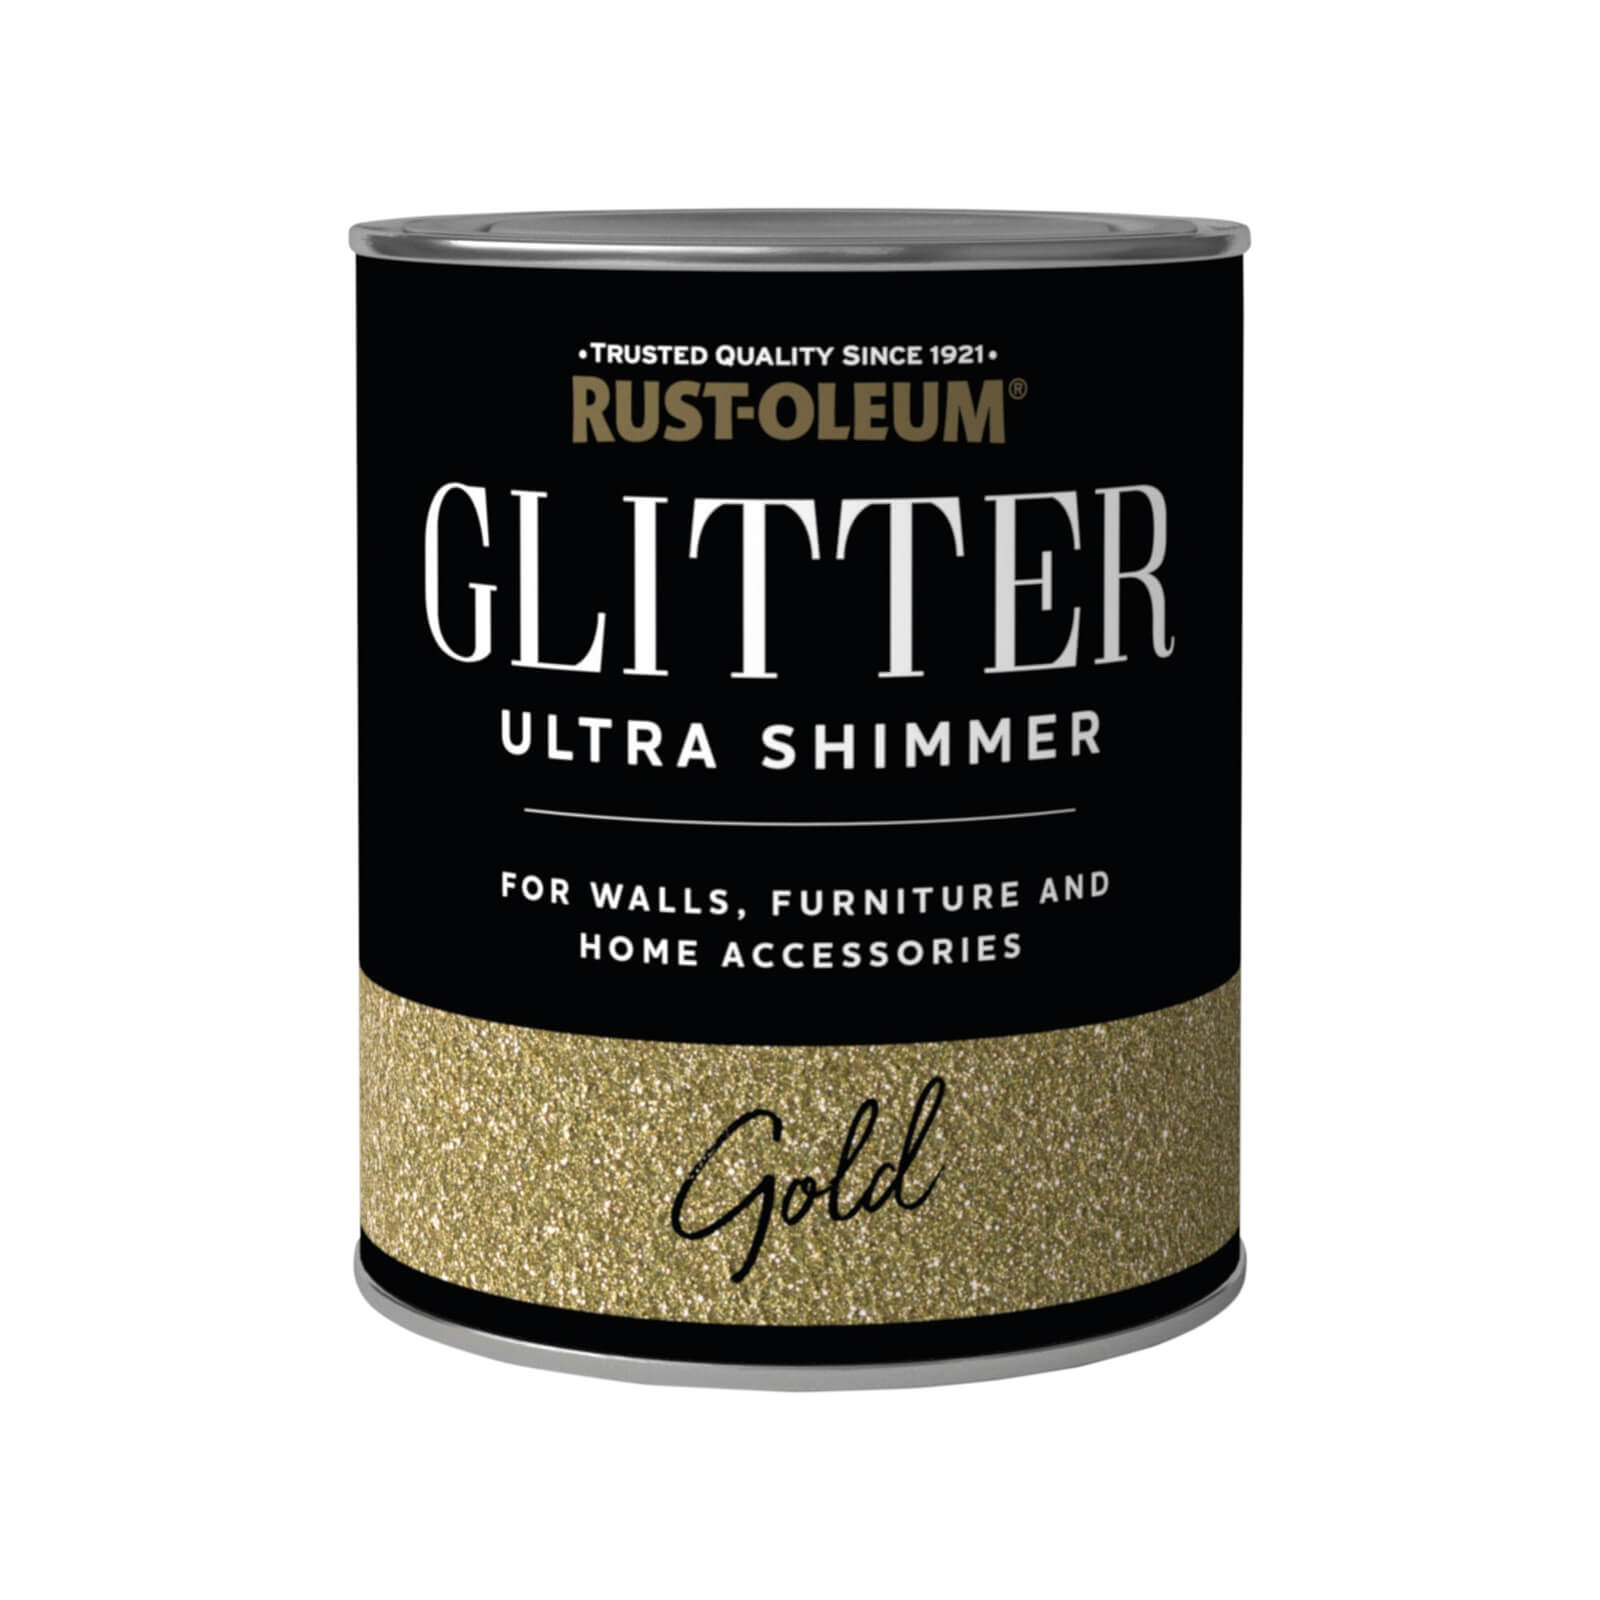 Photo of Rust-oleum Ultra Shimmer Gold Glitter - 250ml